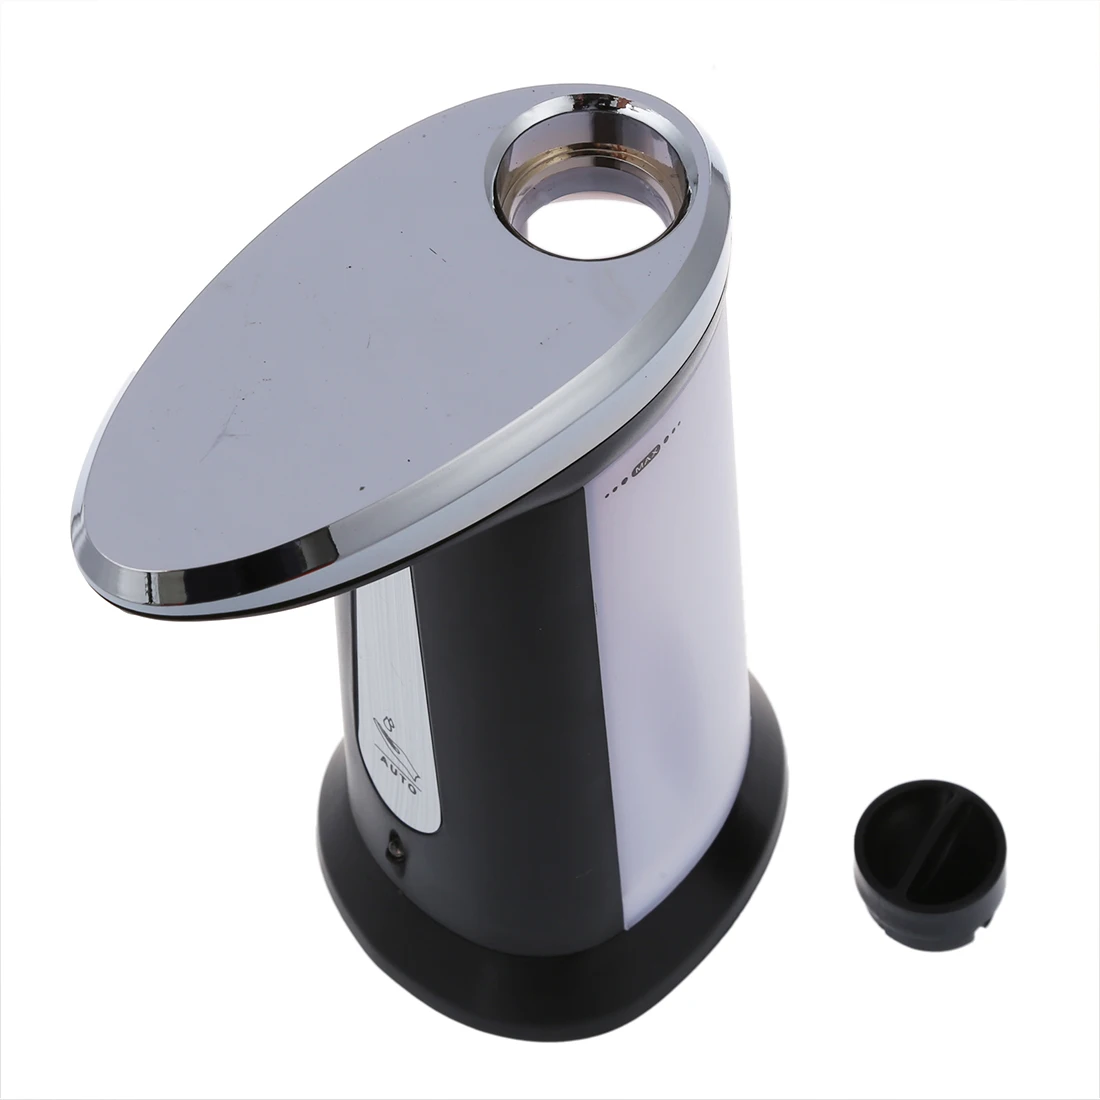 Автоматический сенсорный диспенсер для мыла и дезинфицирующего средства для кухни и ванной комнаты, серый